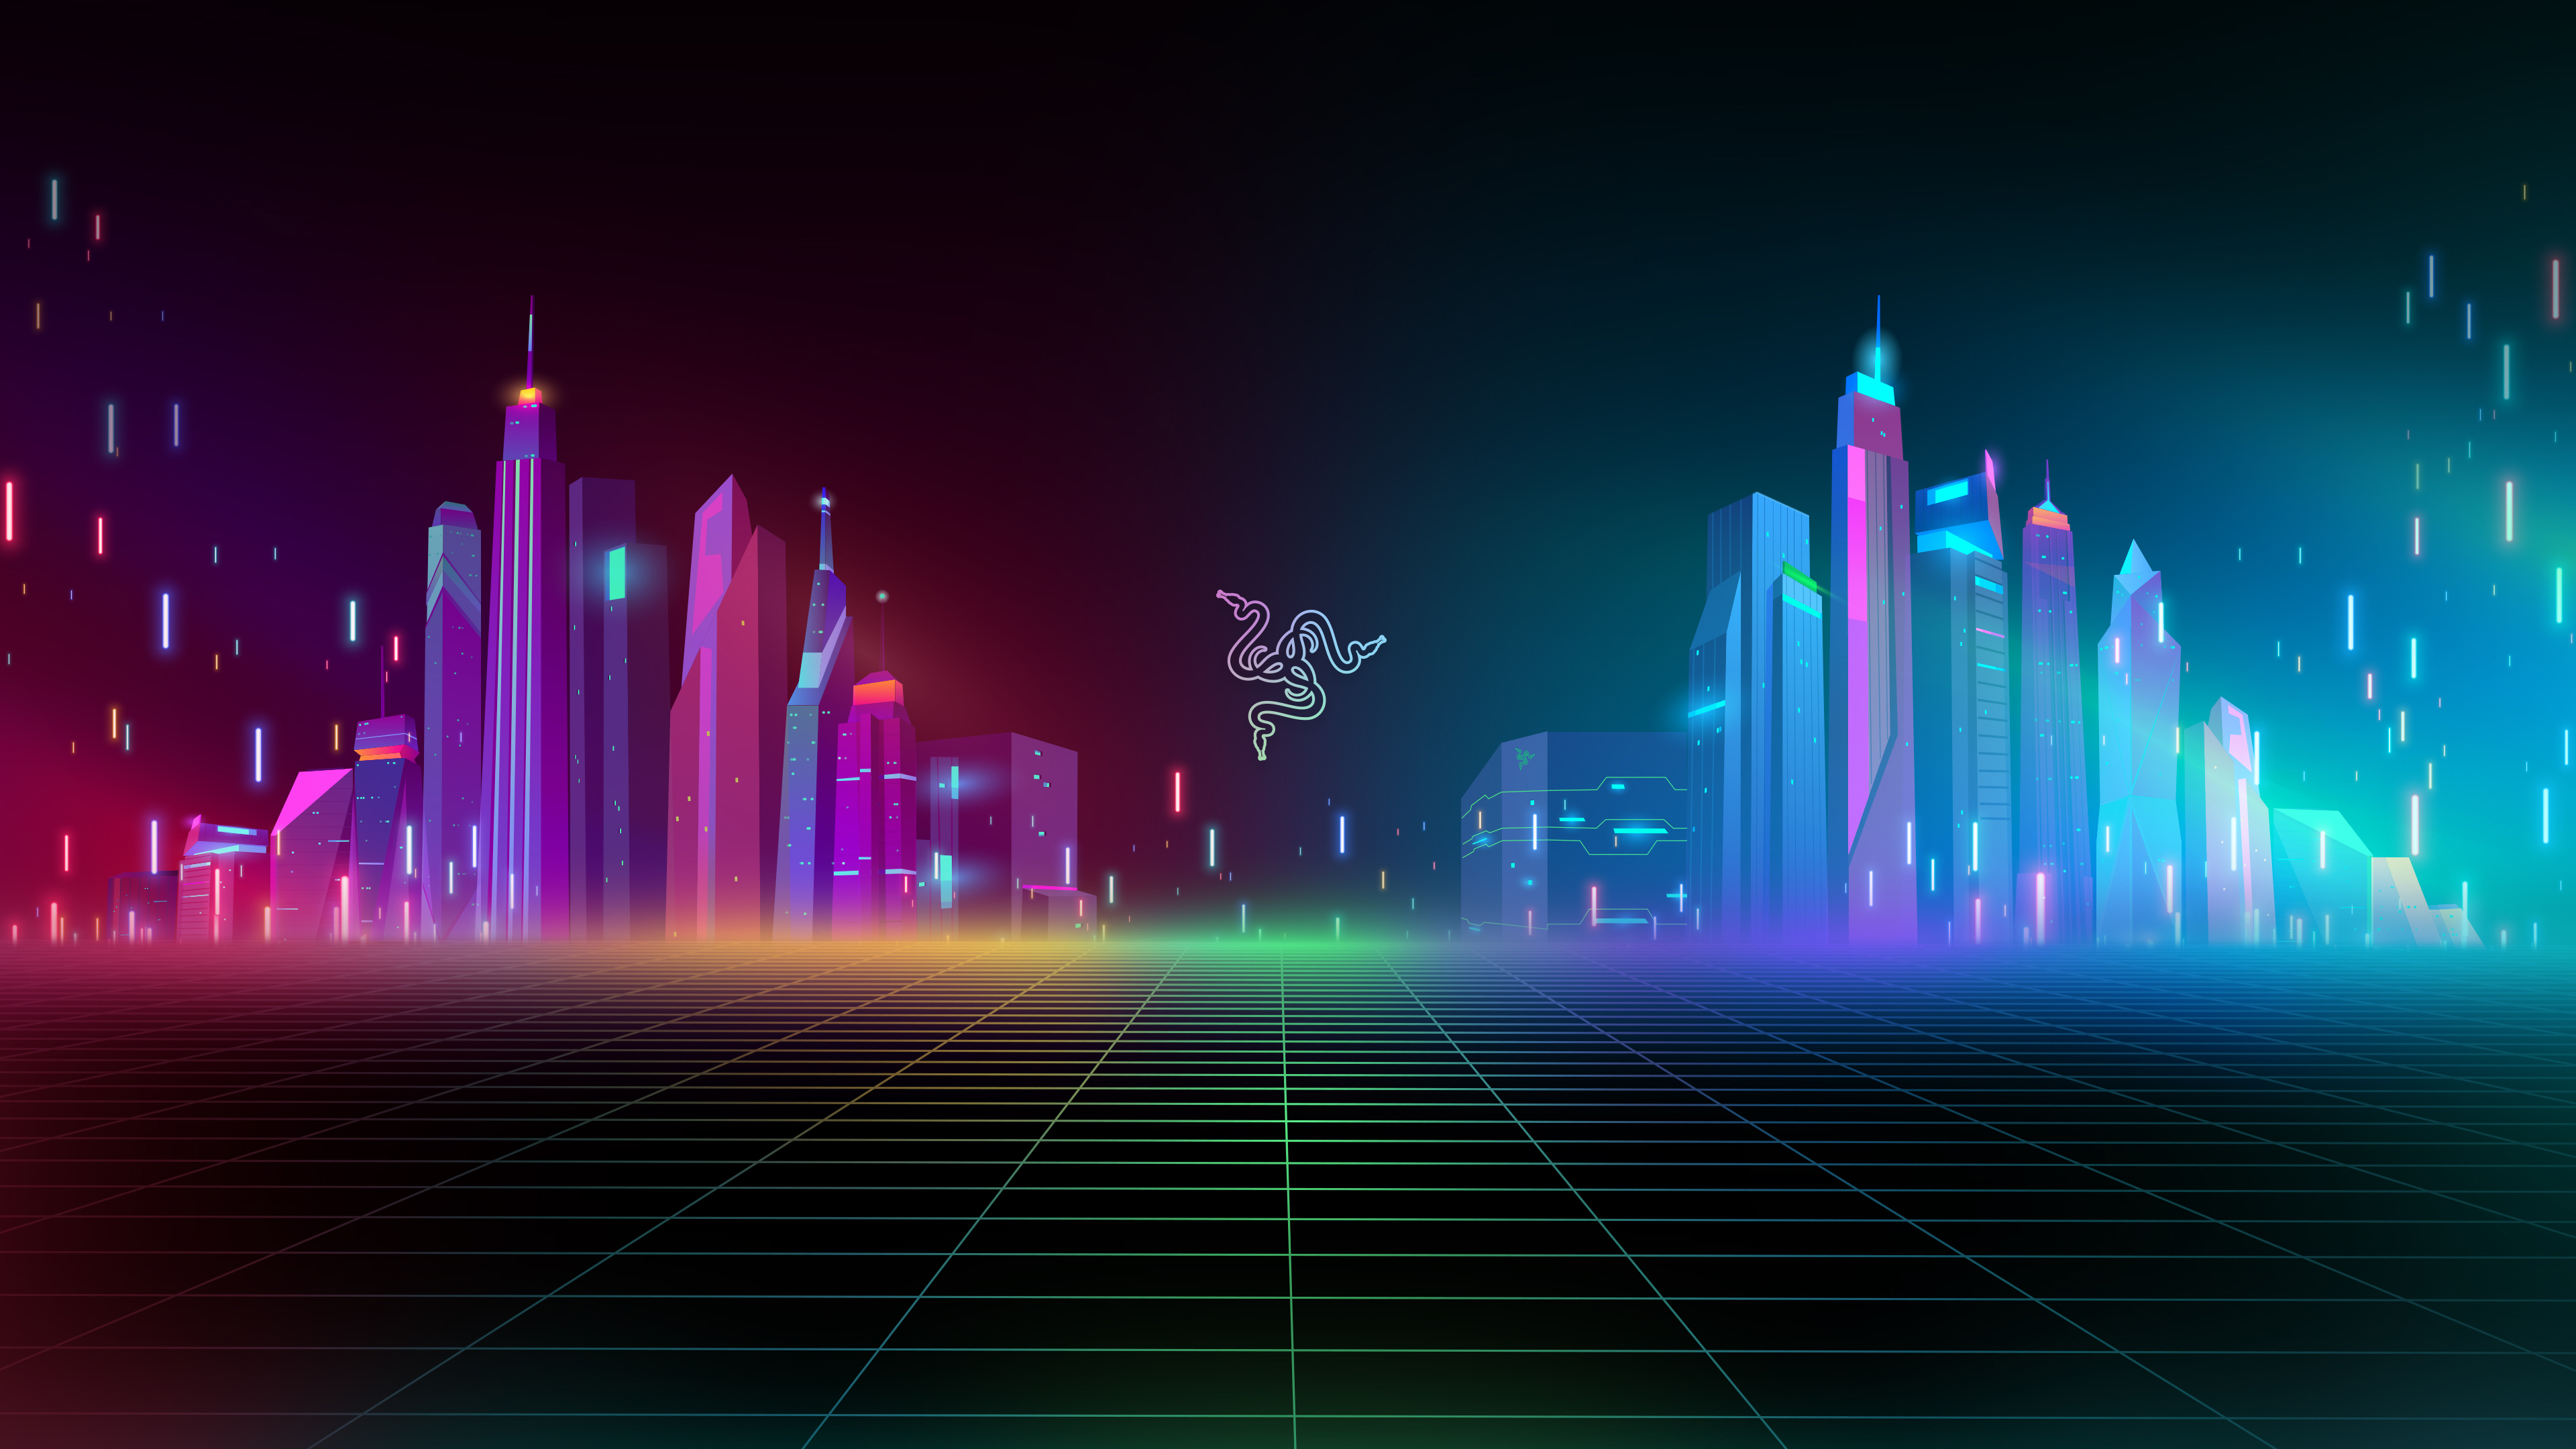 Razer, Cyber city, Neon, Colorful, Cityscape, Futuristic, 4k Free deskk wallpaper, Ultra HD